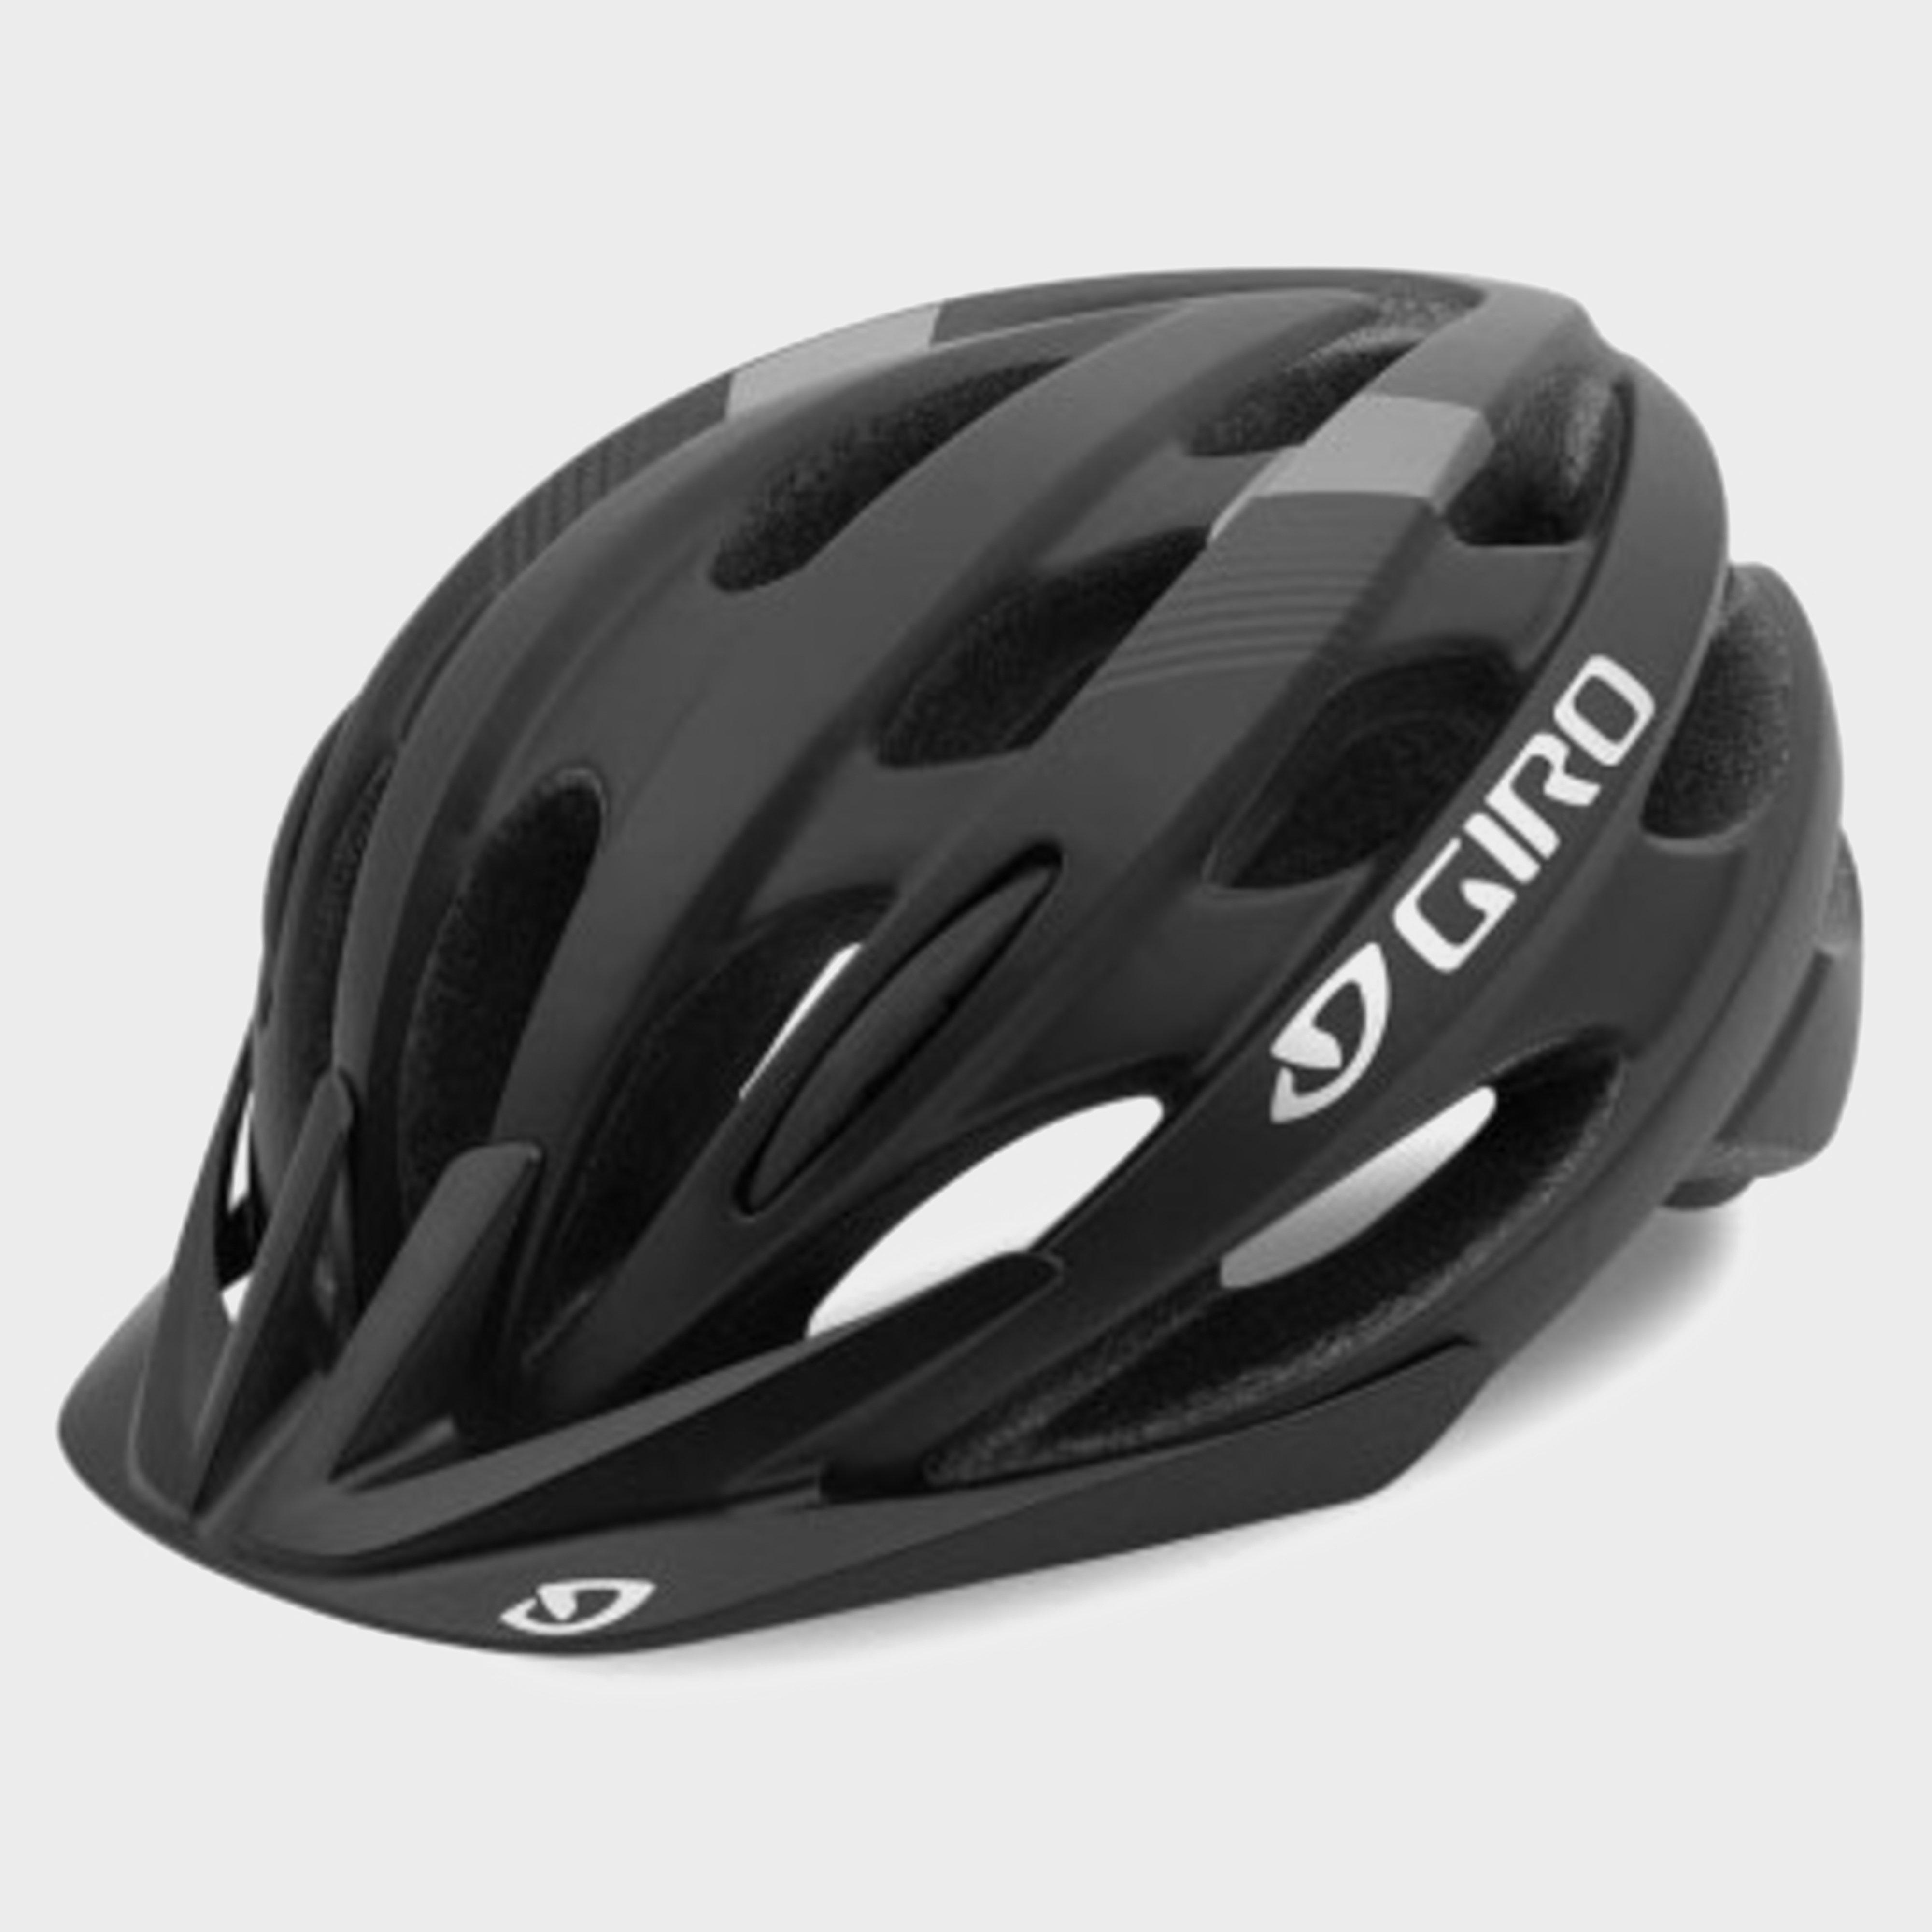 Giro Revel Cycling Helmet - Black/revel  Black/revel